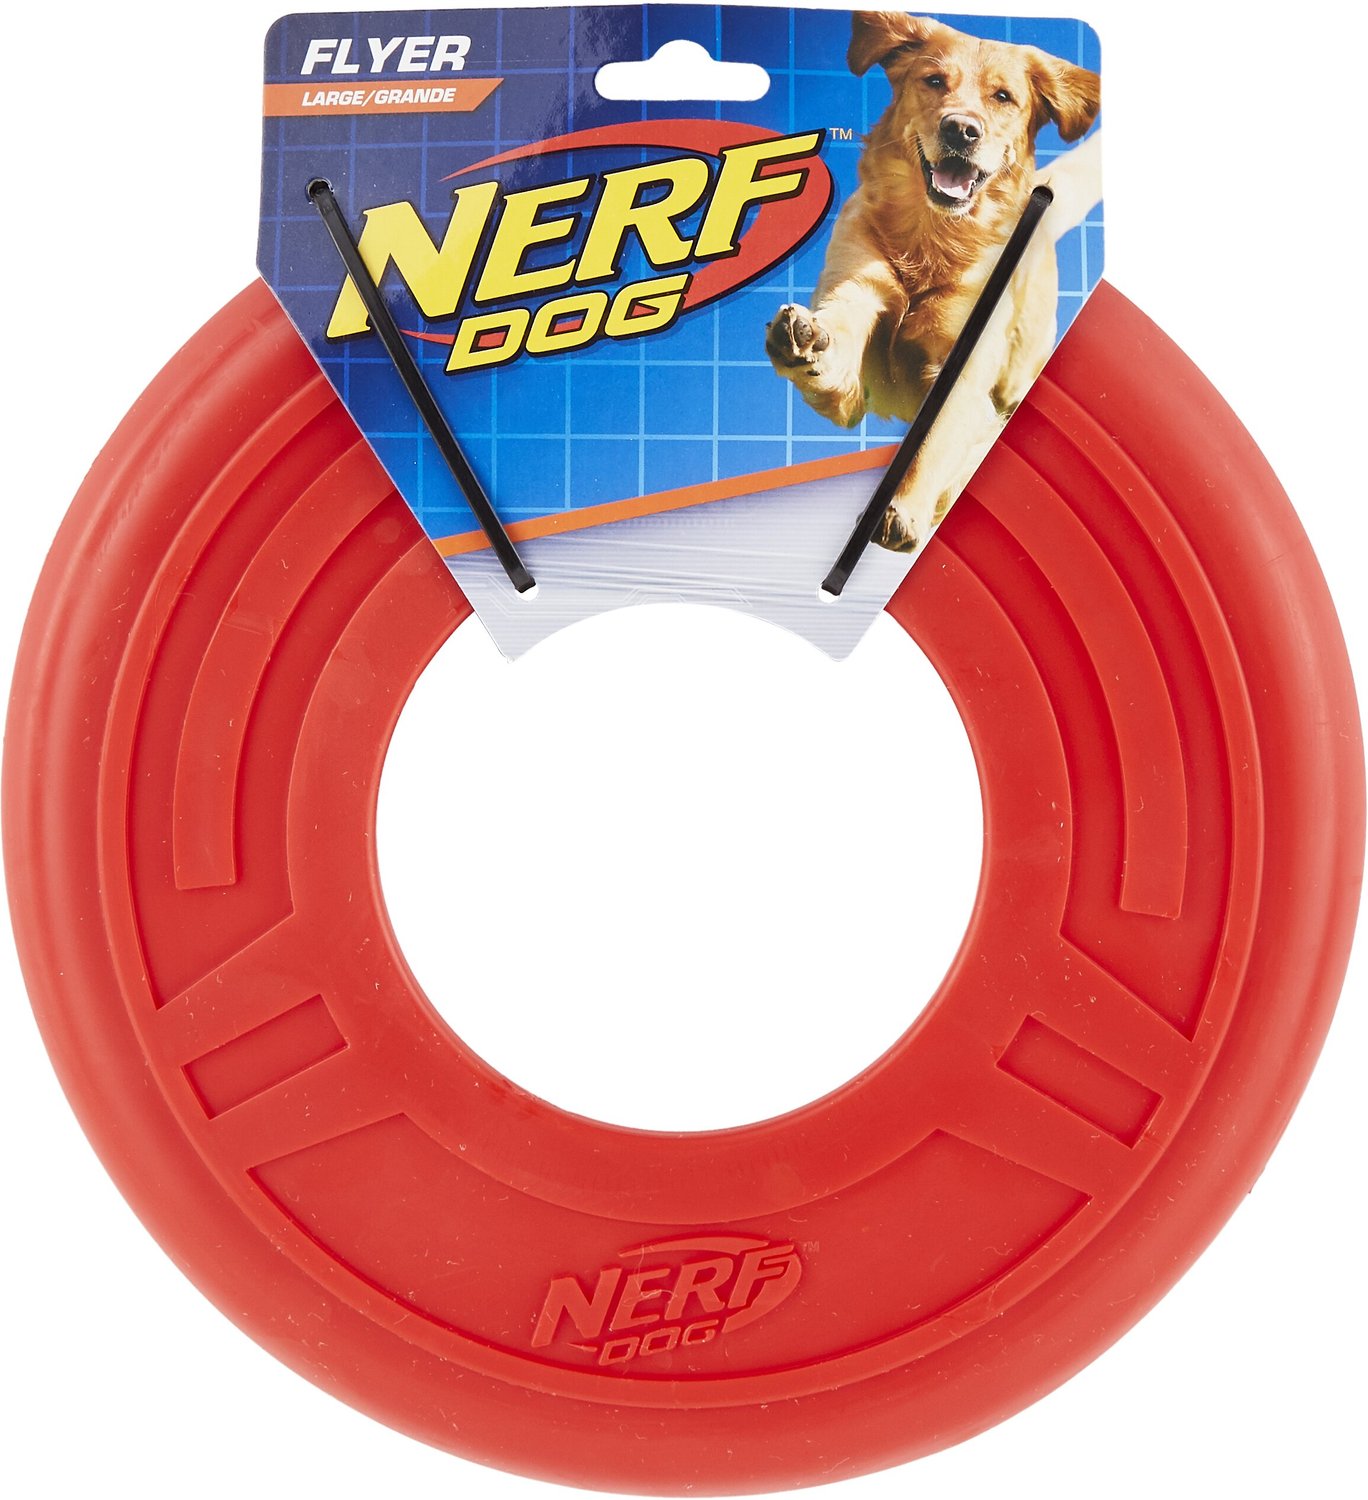 NERF DOG Atomic Flyer Dog Toy, Large 